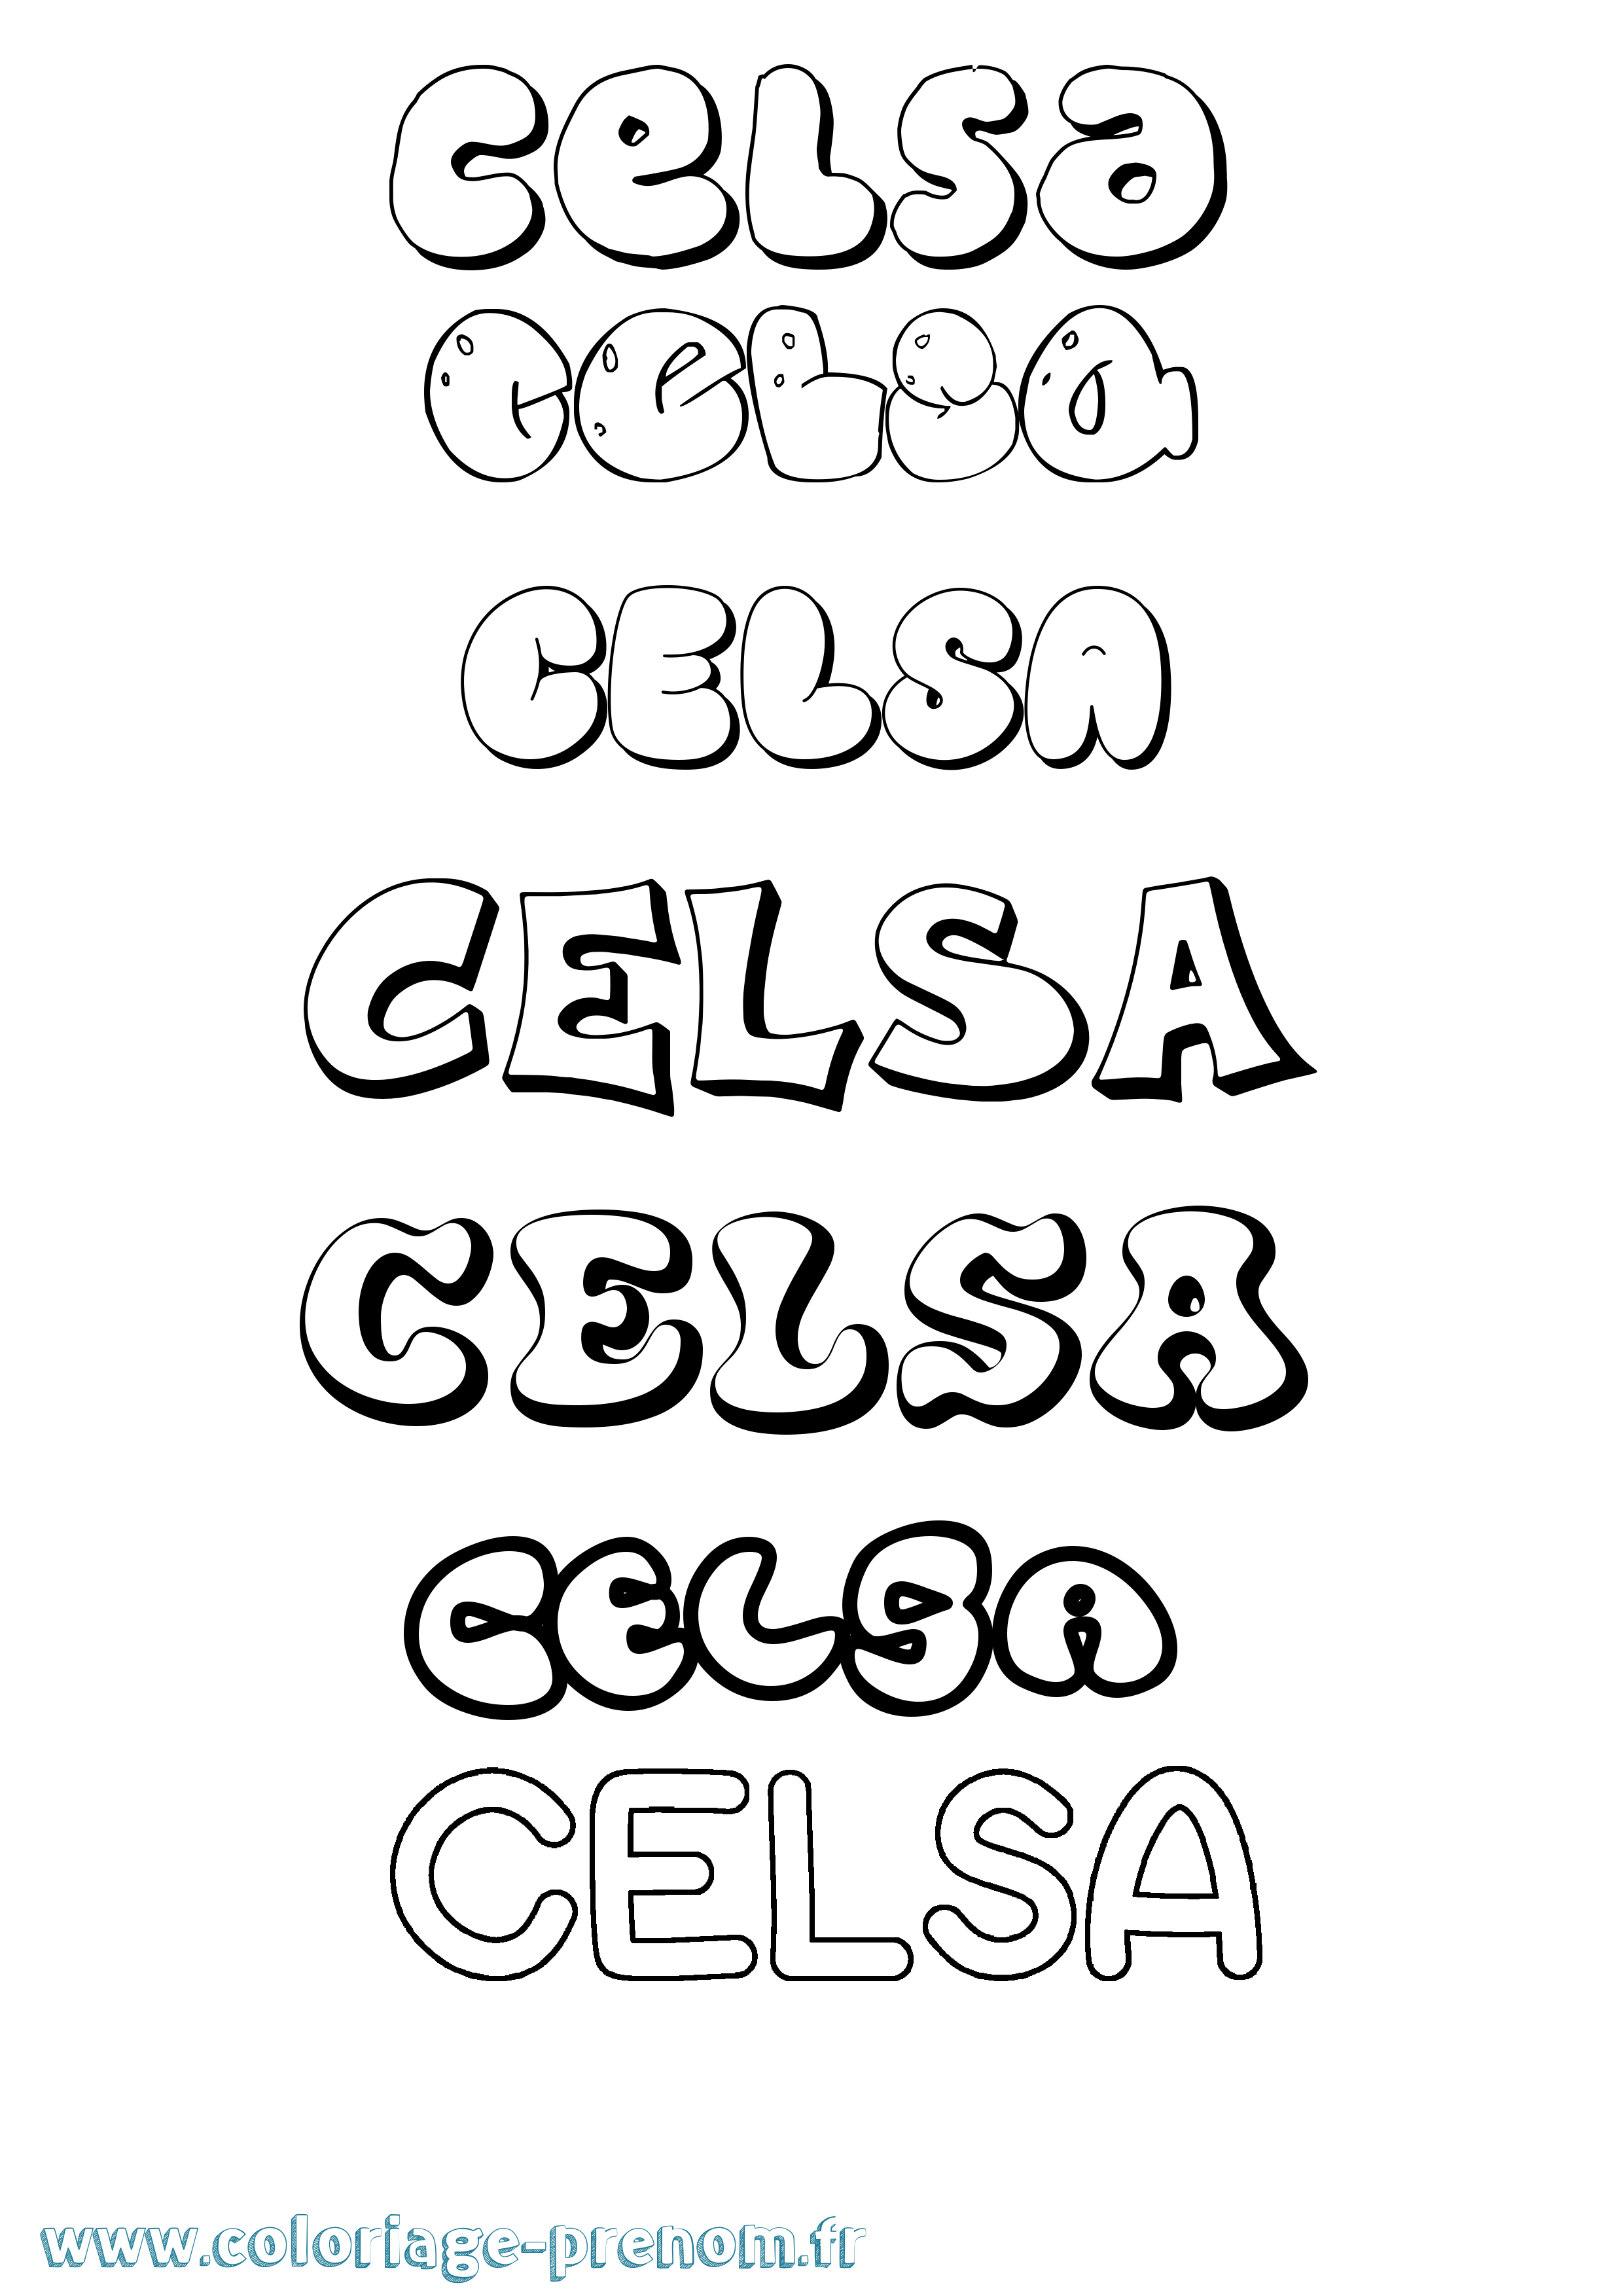 Coloriage prénom Celsa Bubble